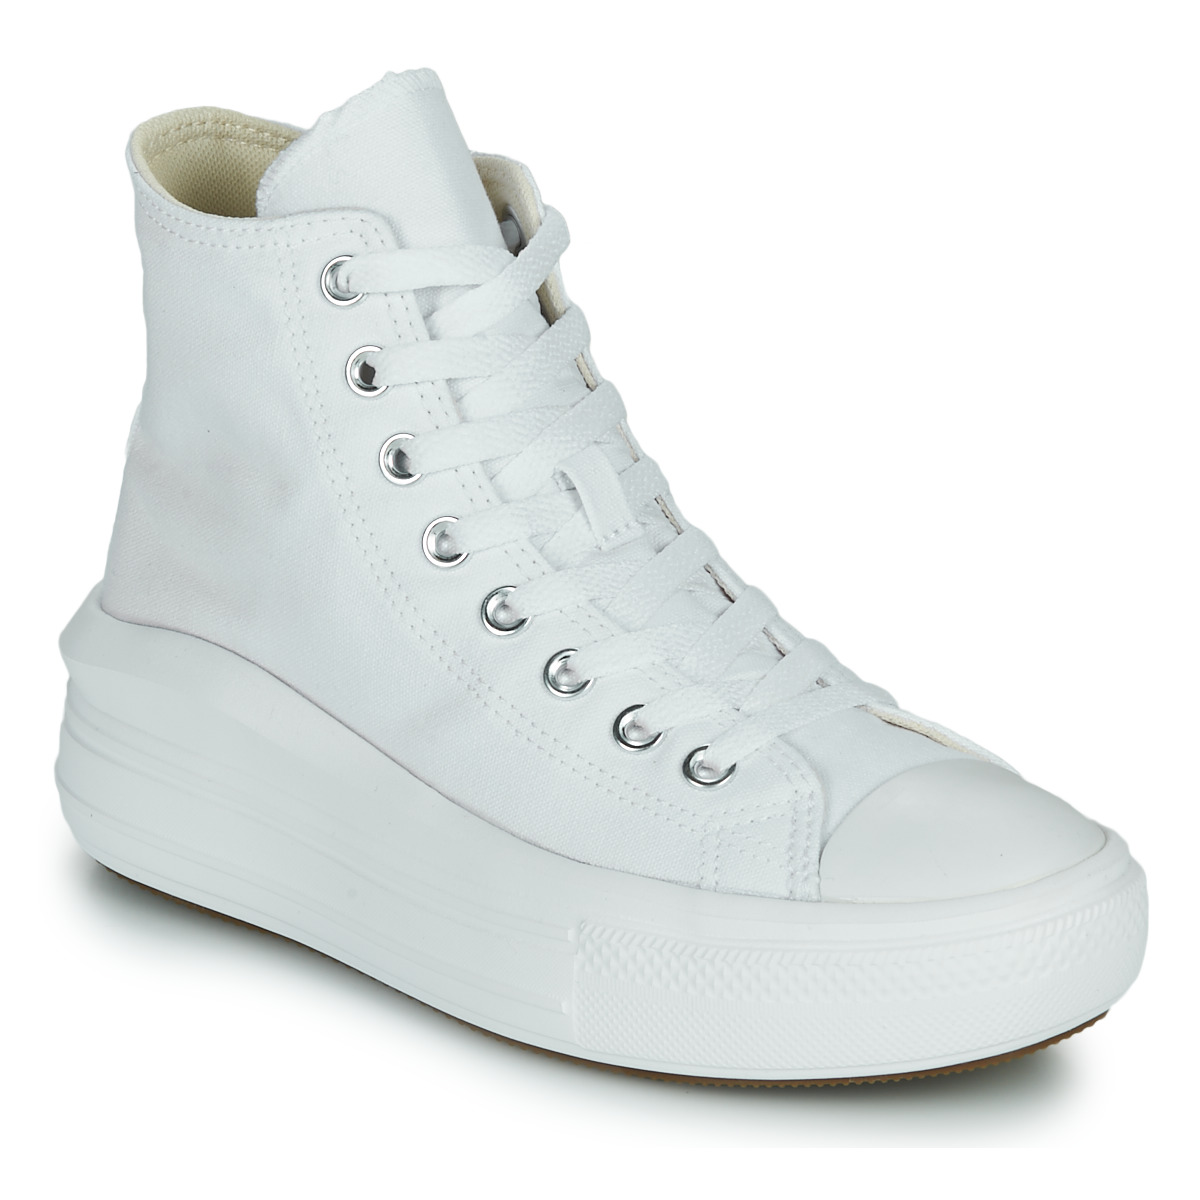 Scarpe Donna Sneakers alte Converse Chuck Taylor All Star Move Canvas Color Hi Bianco